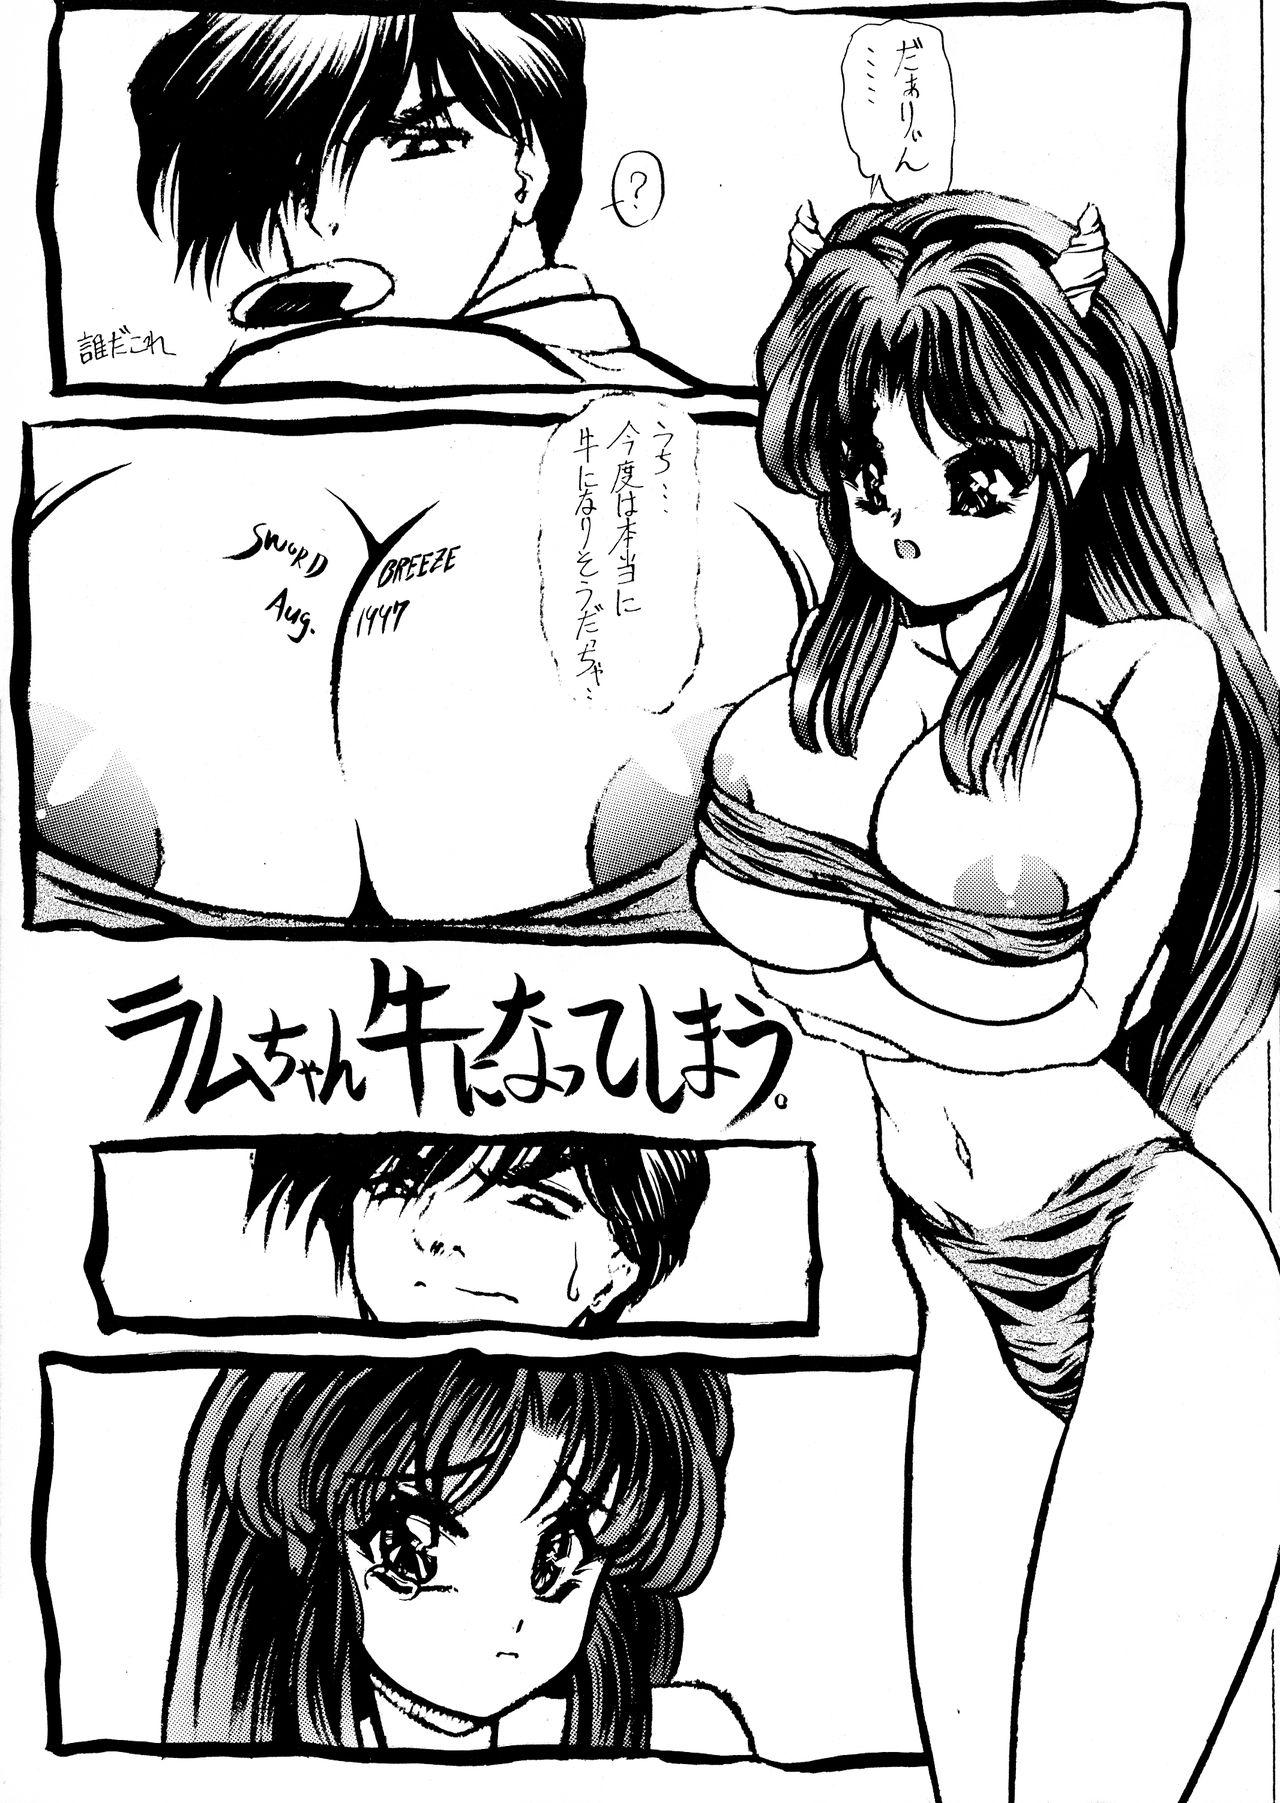 Livecams Imasugu Kimi o Buttobase. - Urusei yatsura Maison ikkoku Threesome - Page 5